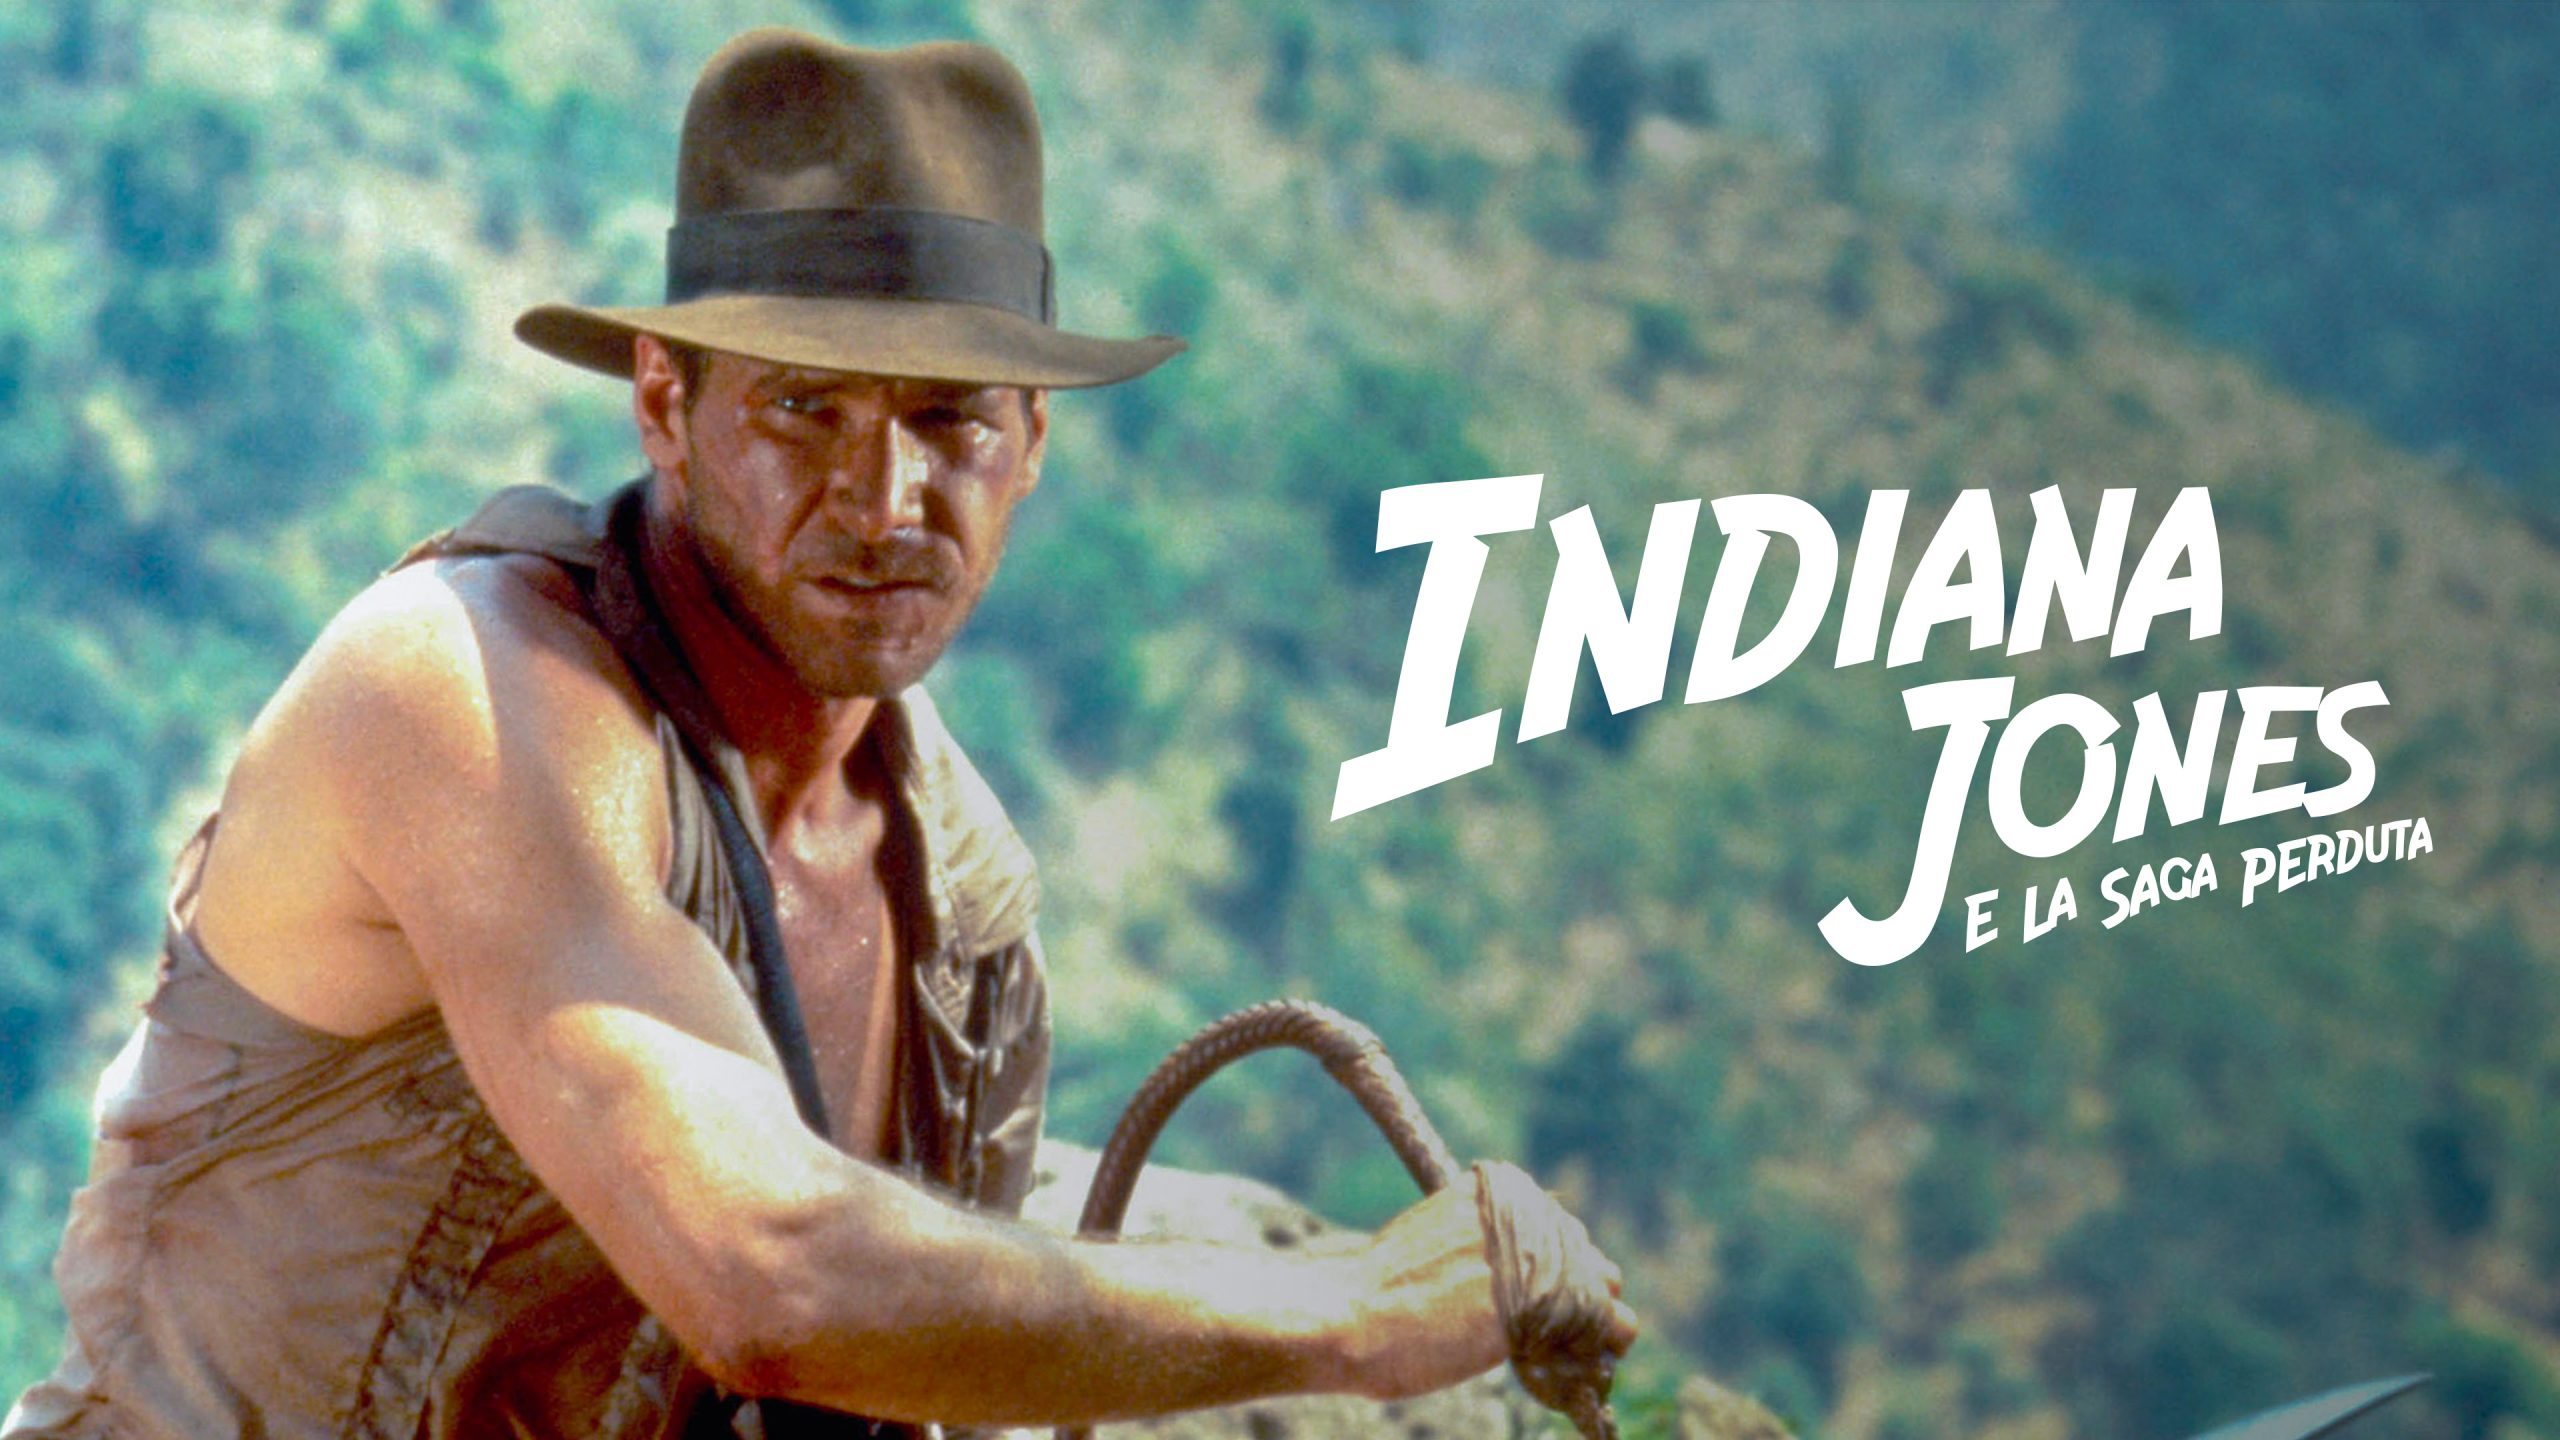 Indiana Jones: alla ricerca della saga perduta